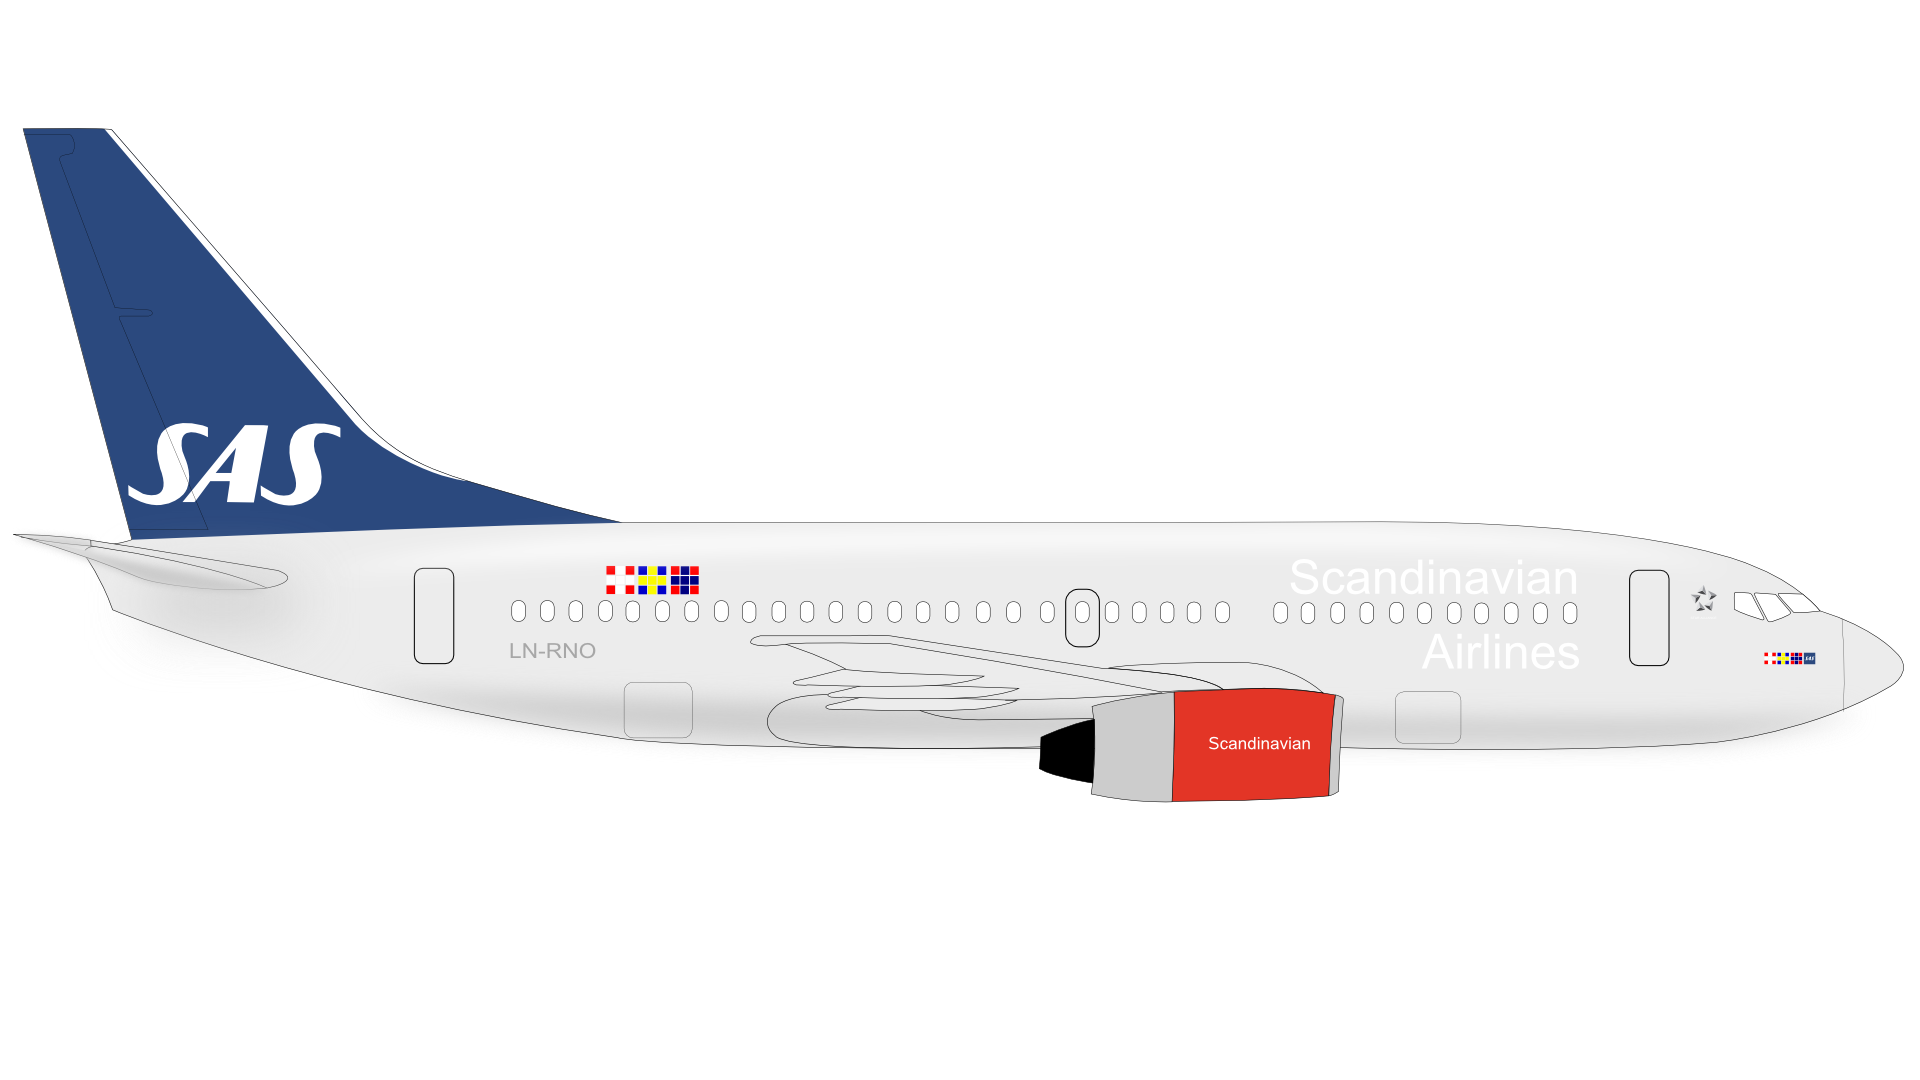 Boeing Baixar PNG Image